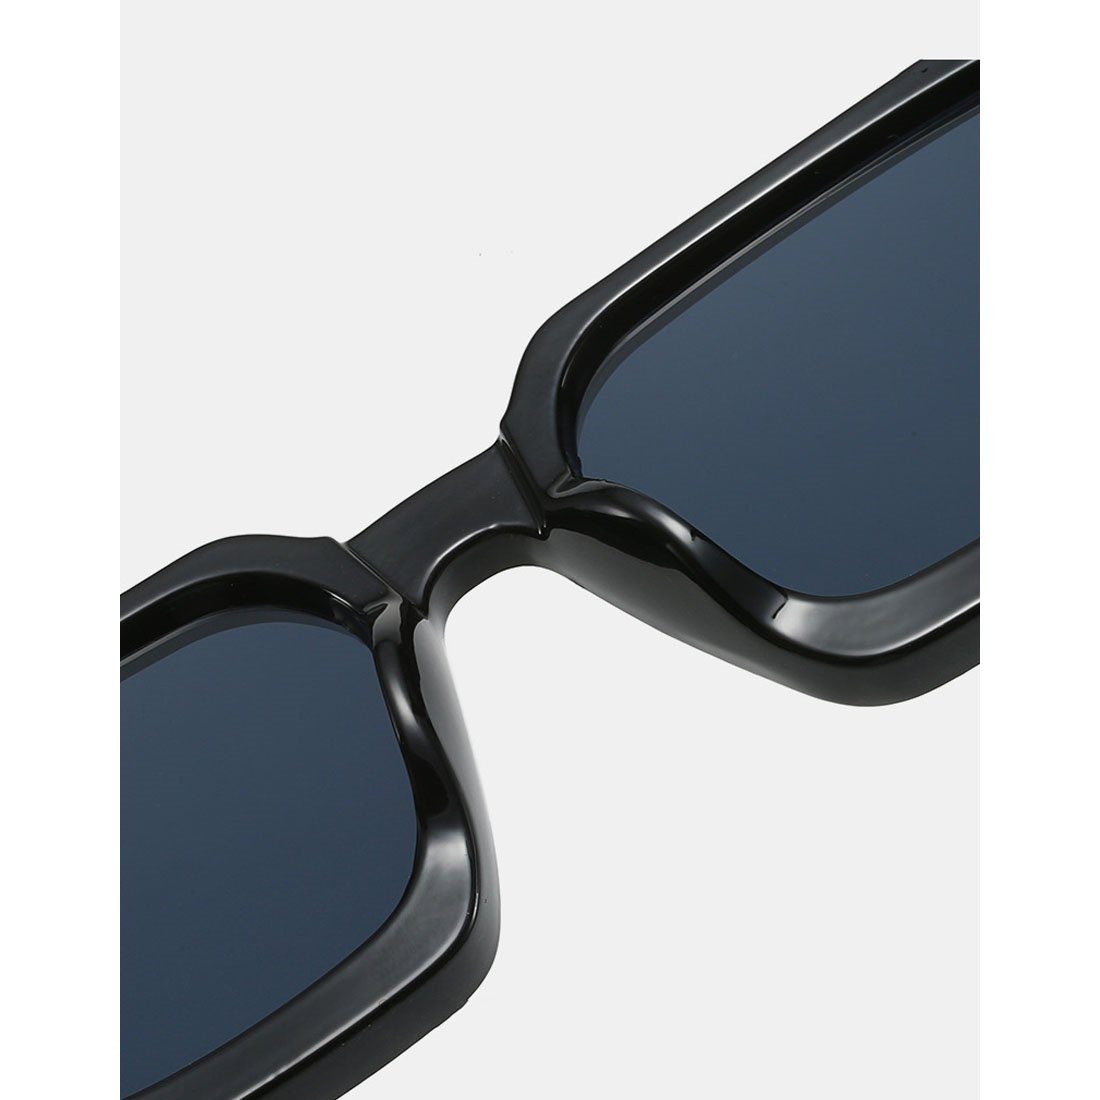 DÖRÖY Frauen,Sommer-Sonnenbrille für Sport-Sonnenbrille für Trendige draußen Sonnenbrille